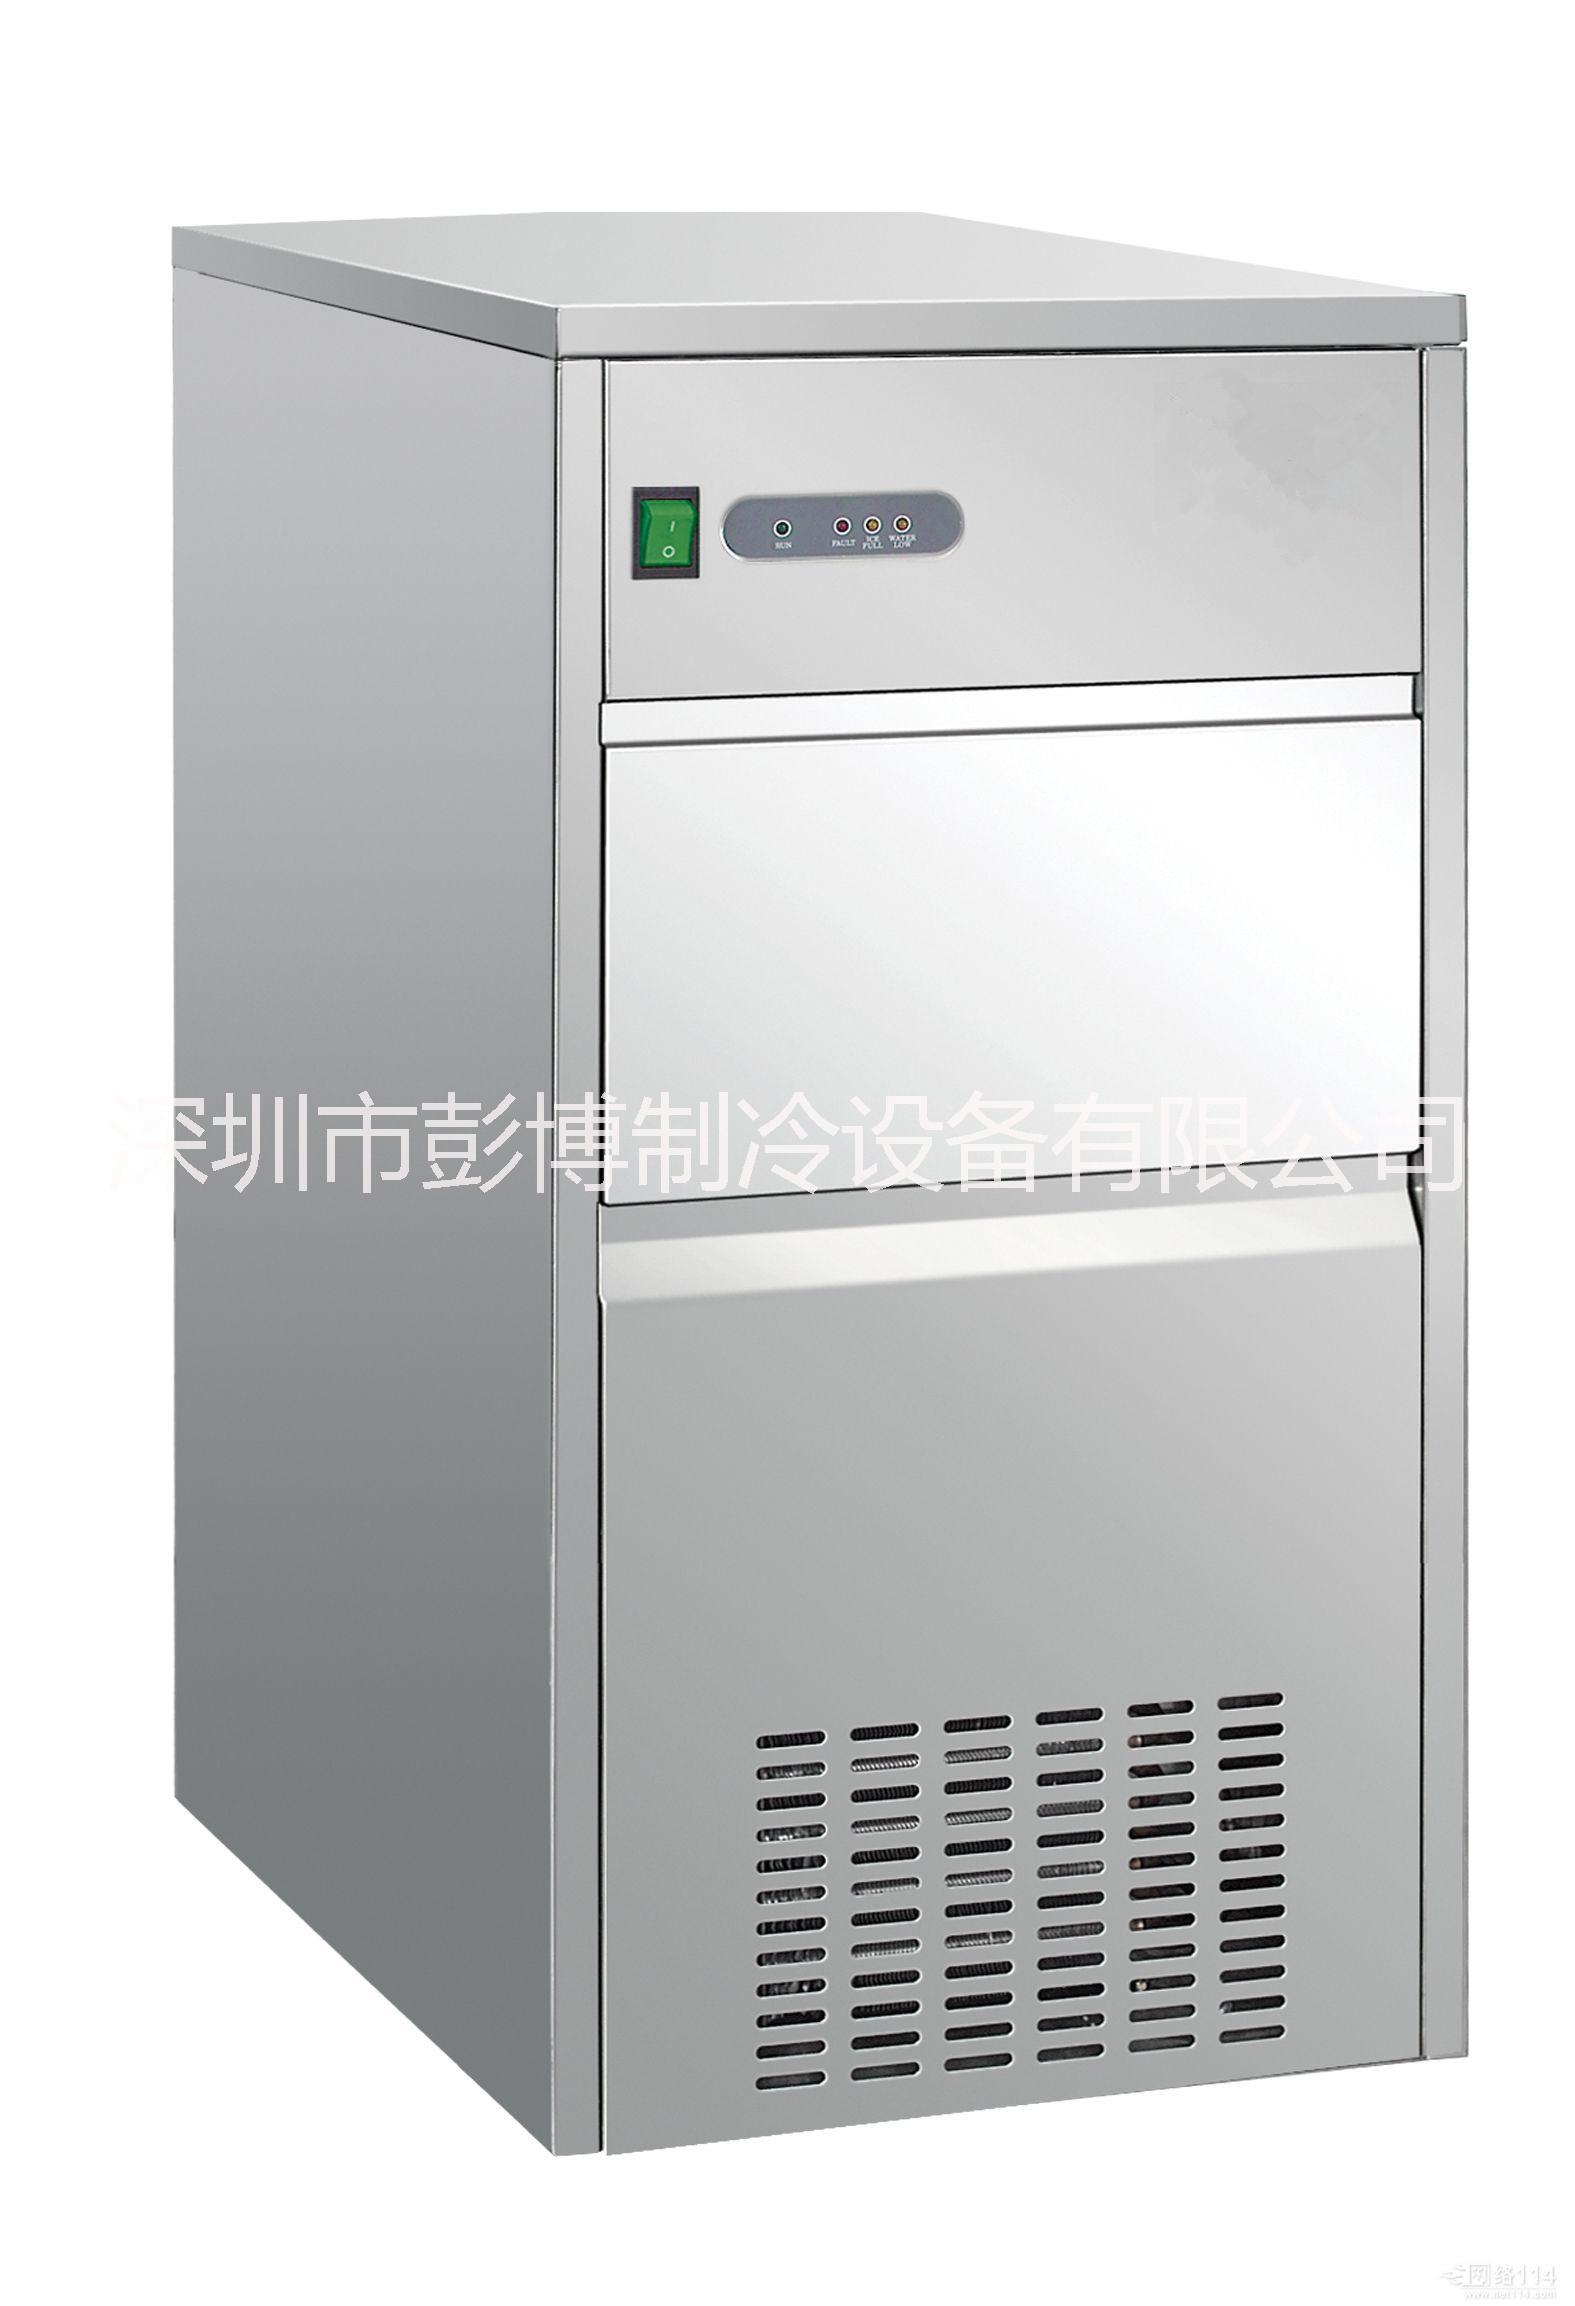 深圳开奶茶店用的工作台厨房柜价格厨房柜工作台冰柜价格